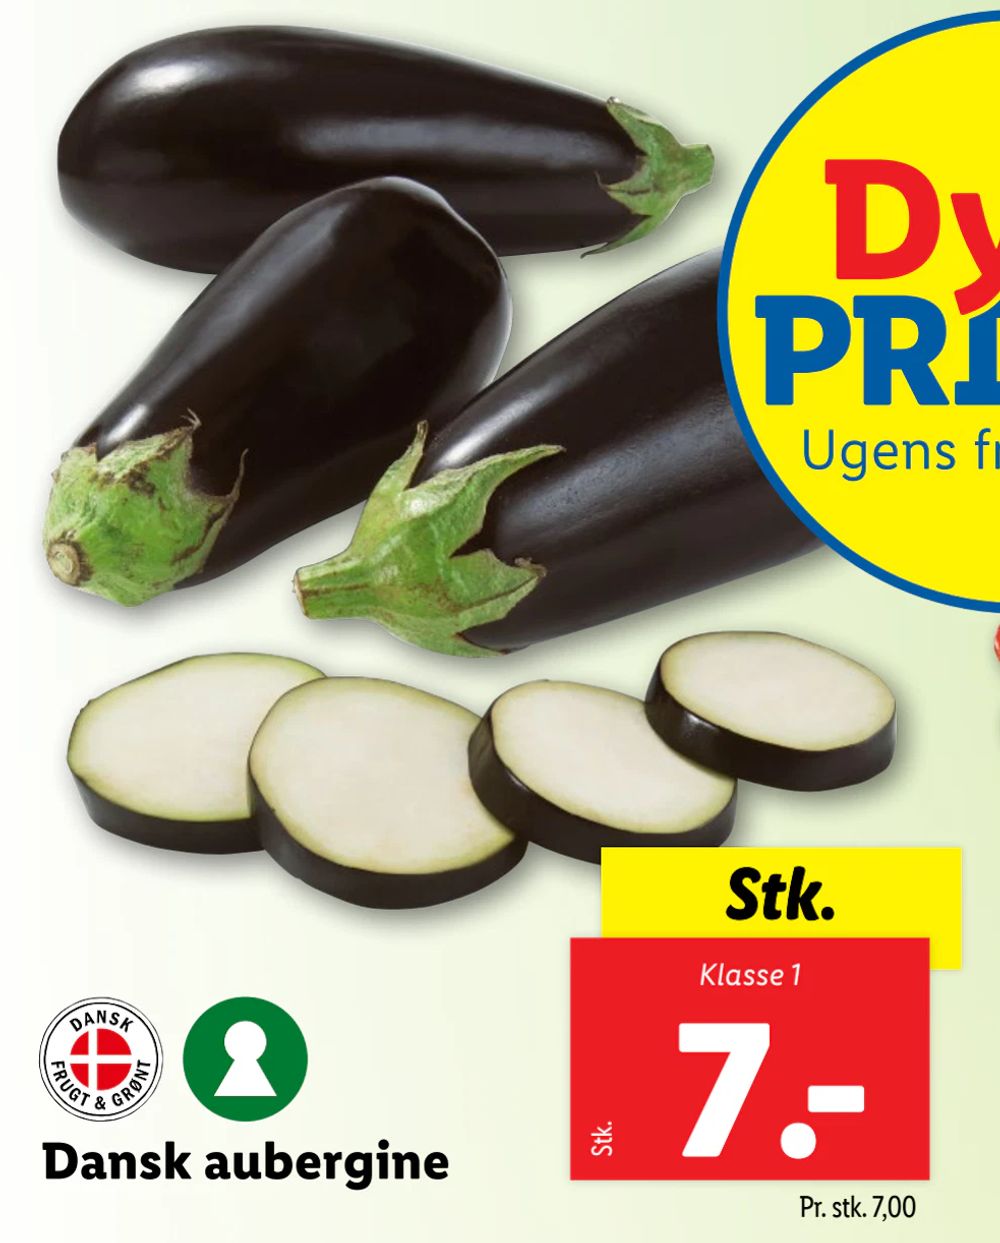 Tilbud på Dansk aubergine fra Lidl til 7 kr.